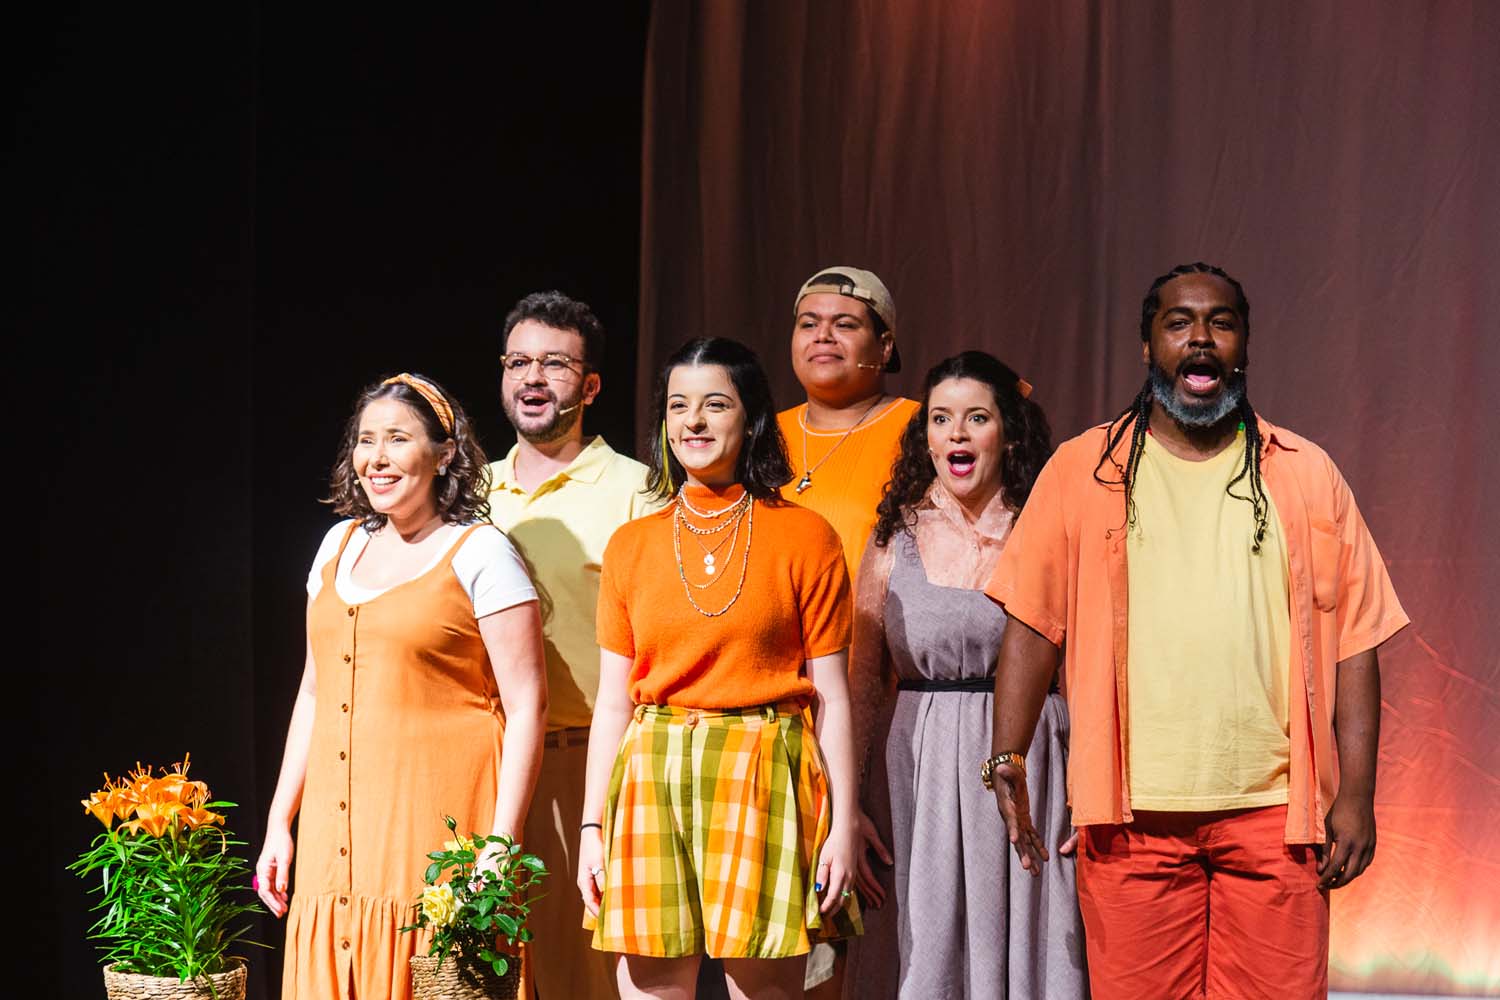 Espetáculo “Bem-vinda, Aurora – o musical” chega  a Baixada Fluminense no Teatro Nova Iguaçu